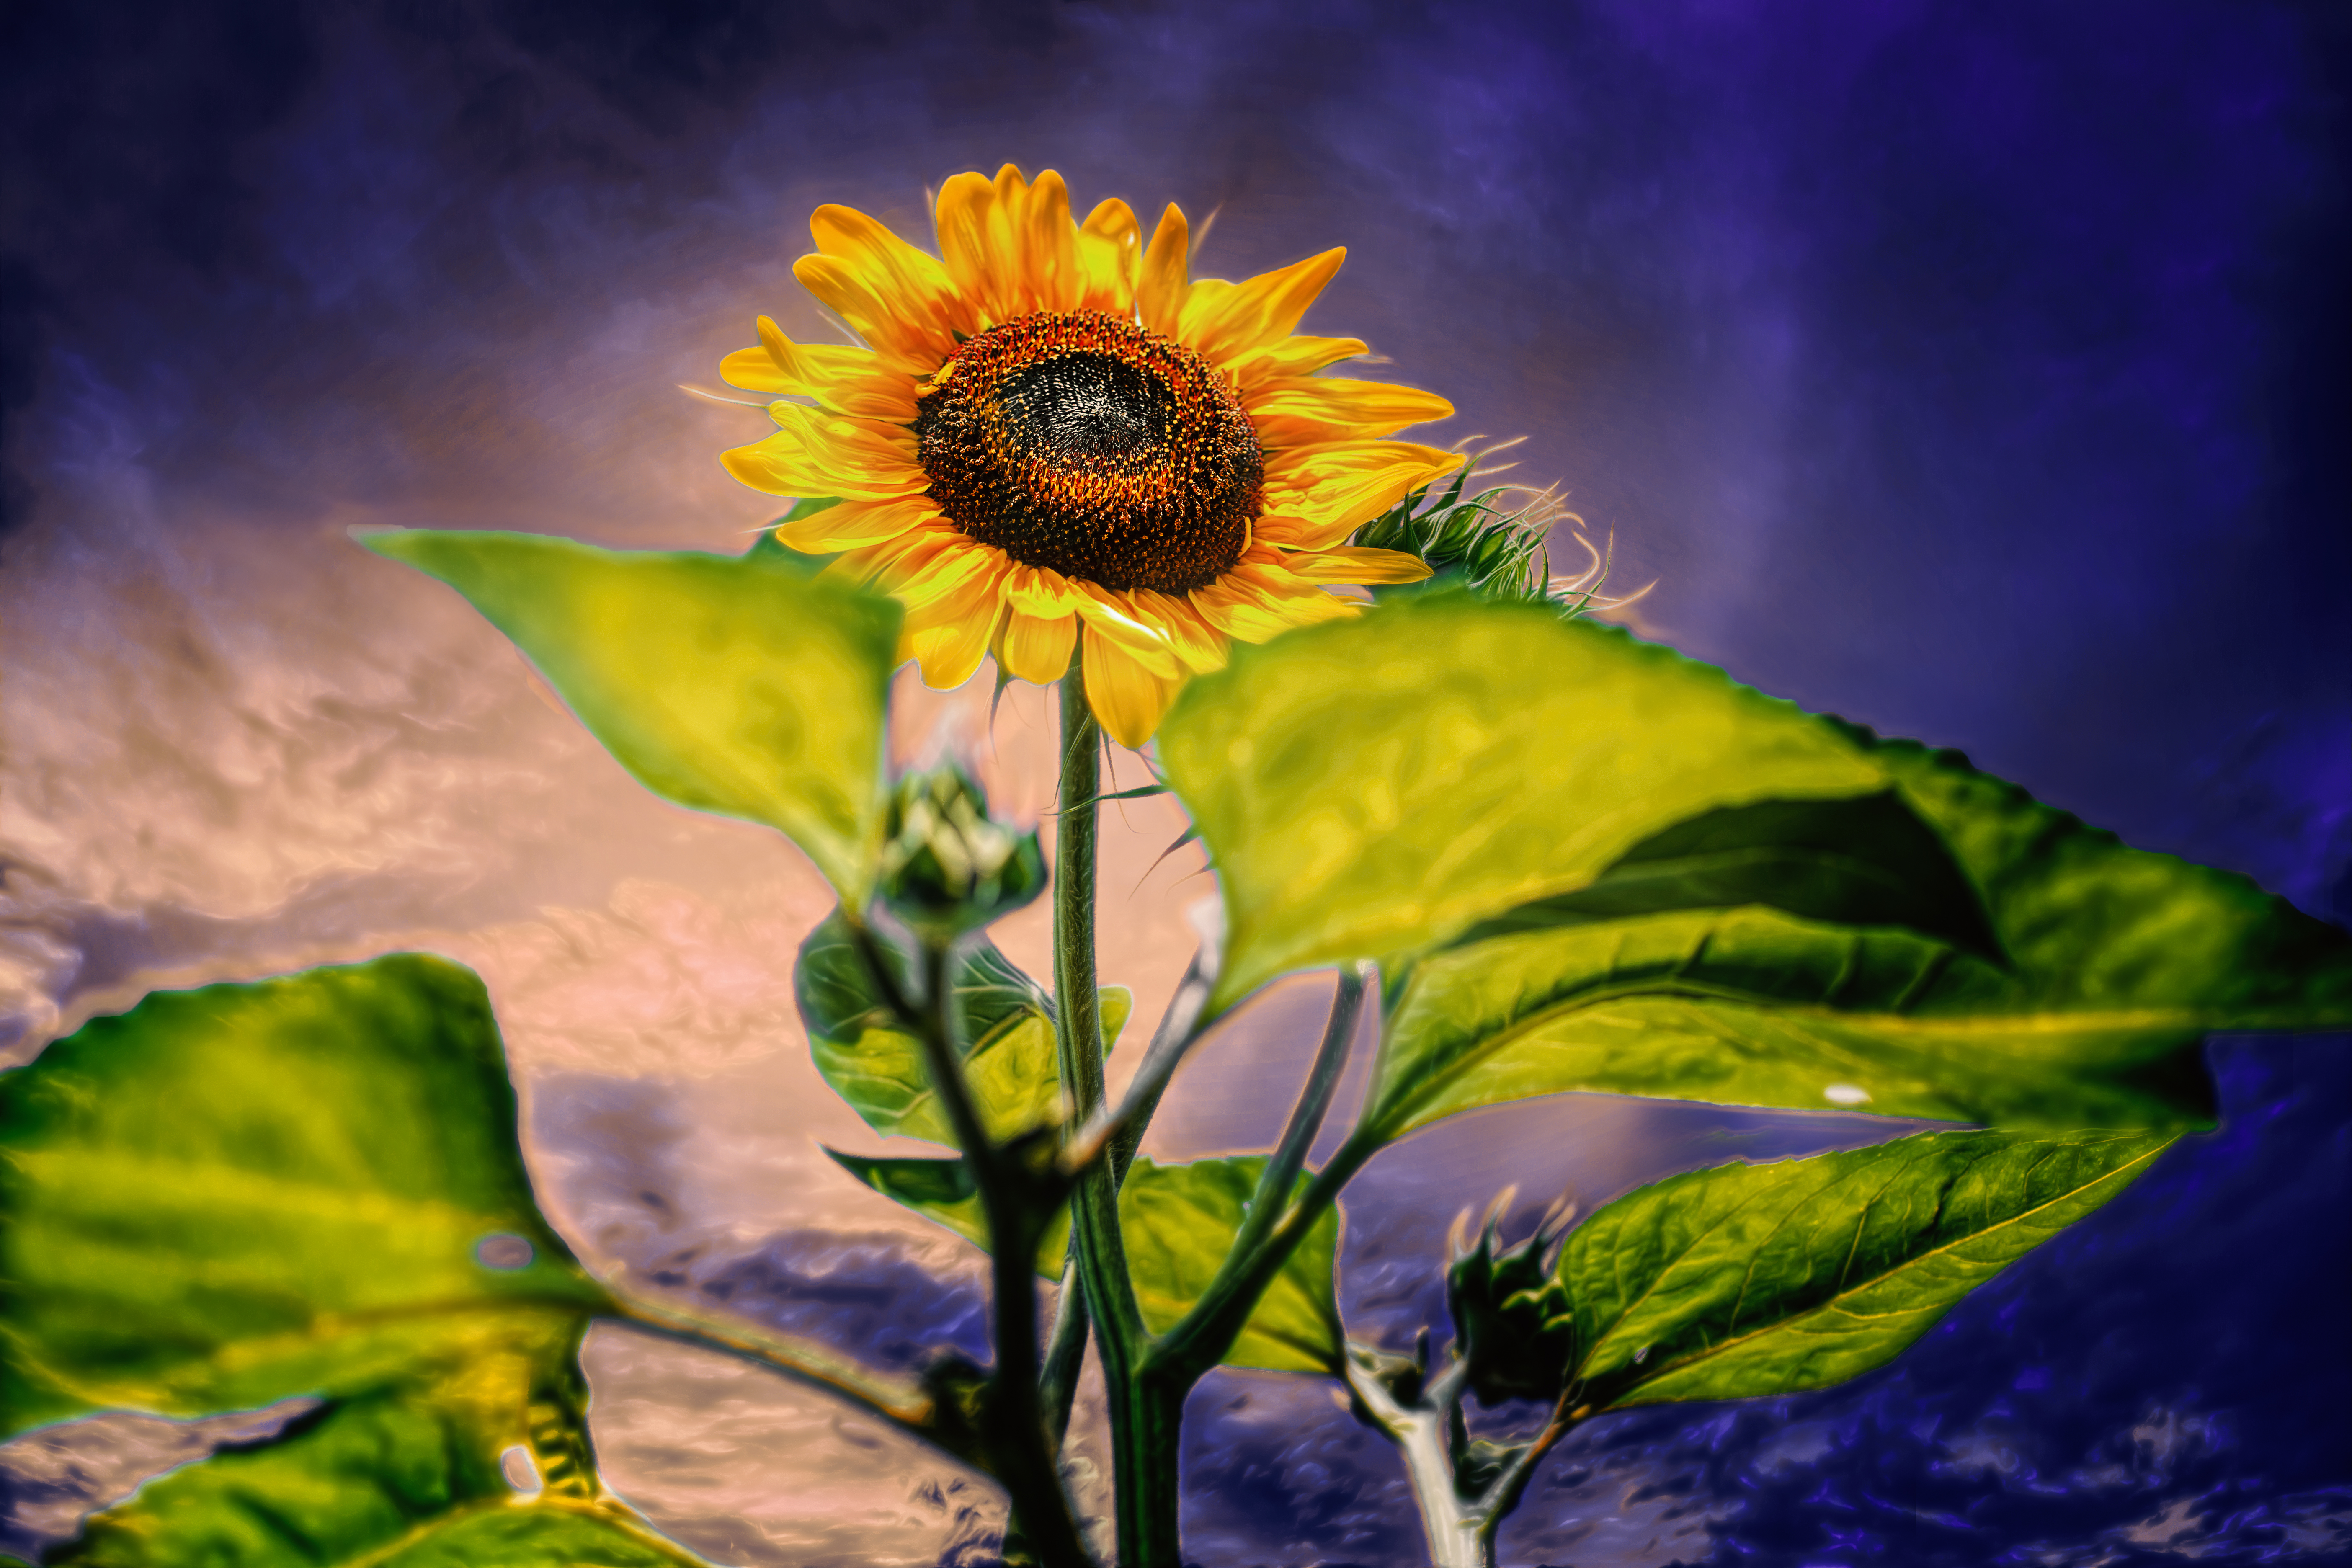 Evening Sun-Flower by Chris Frank